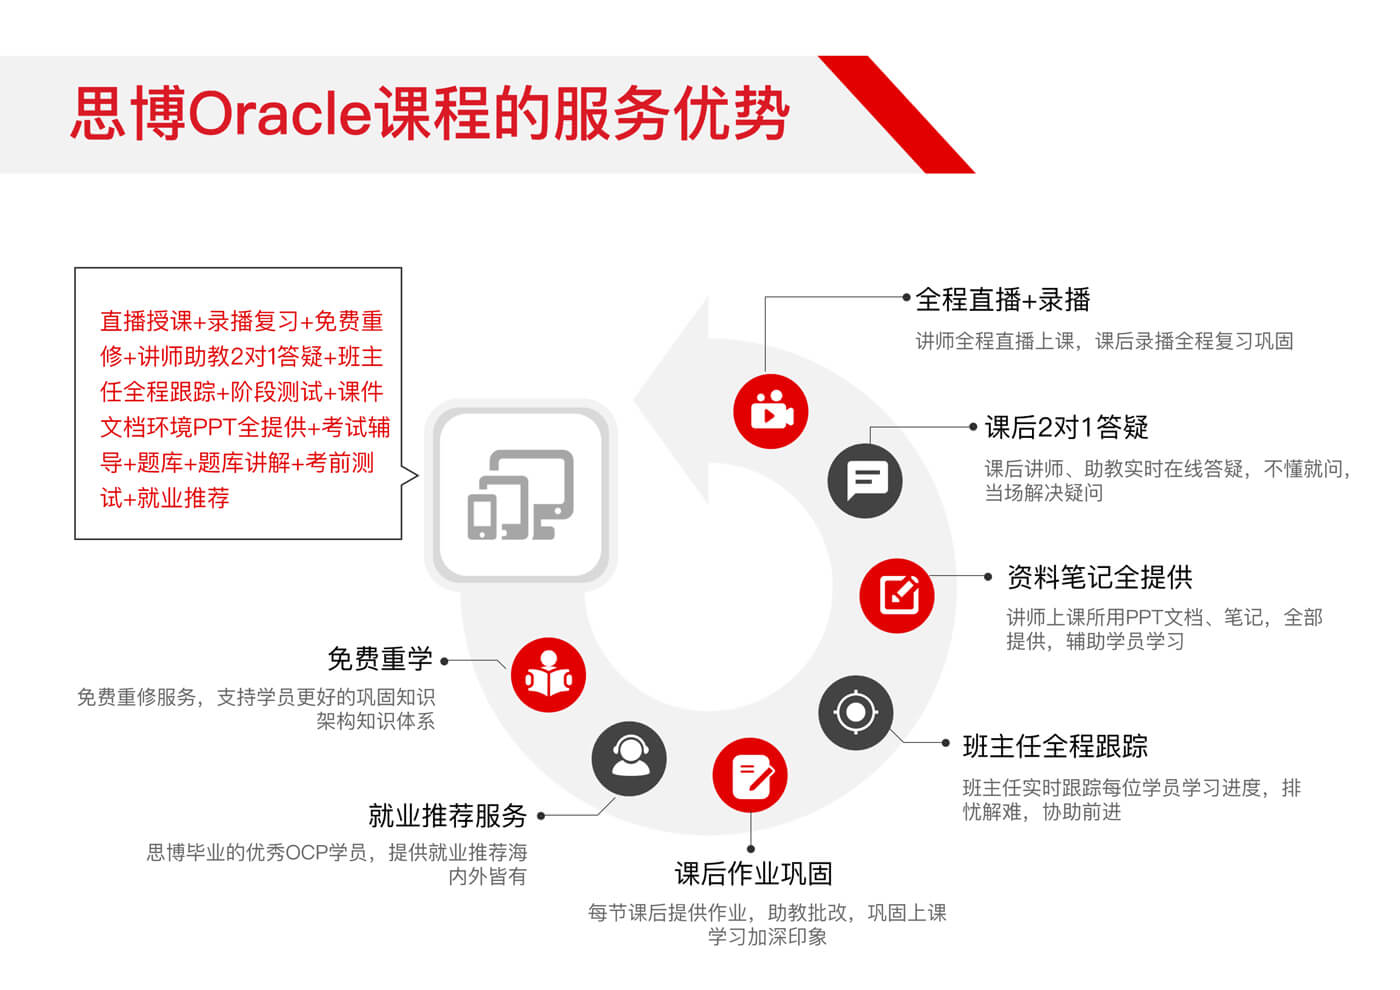 13.思博Oracle课程的服务优势